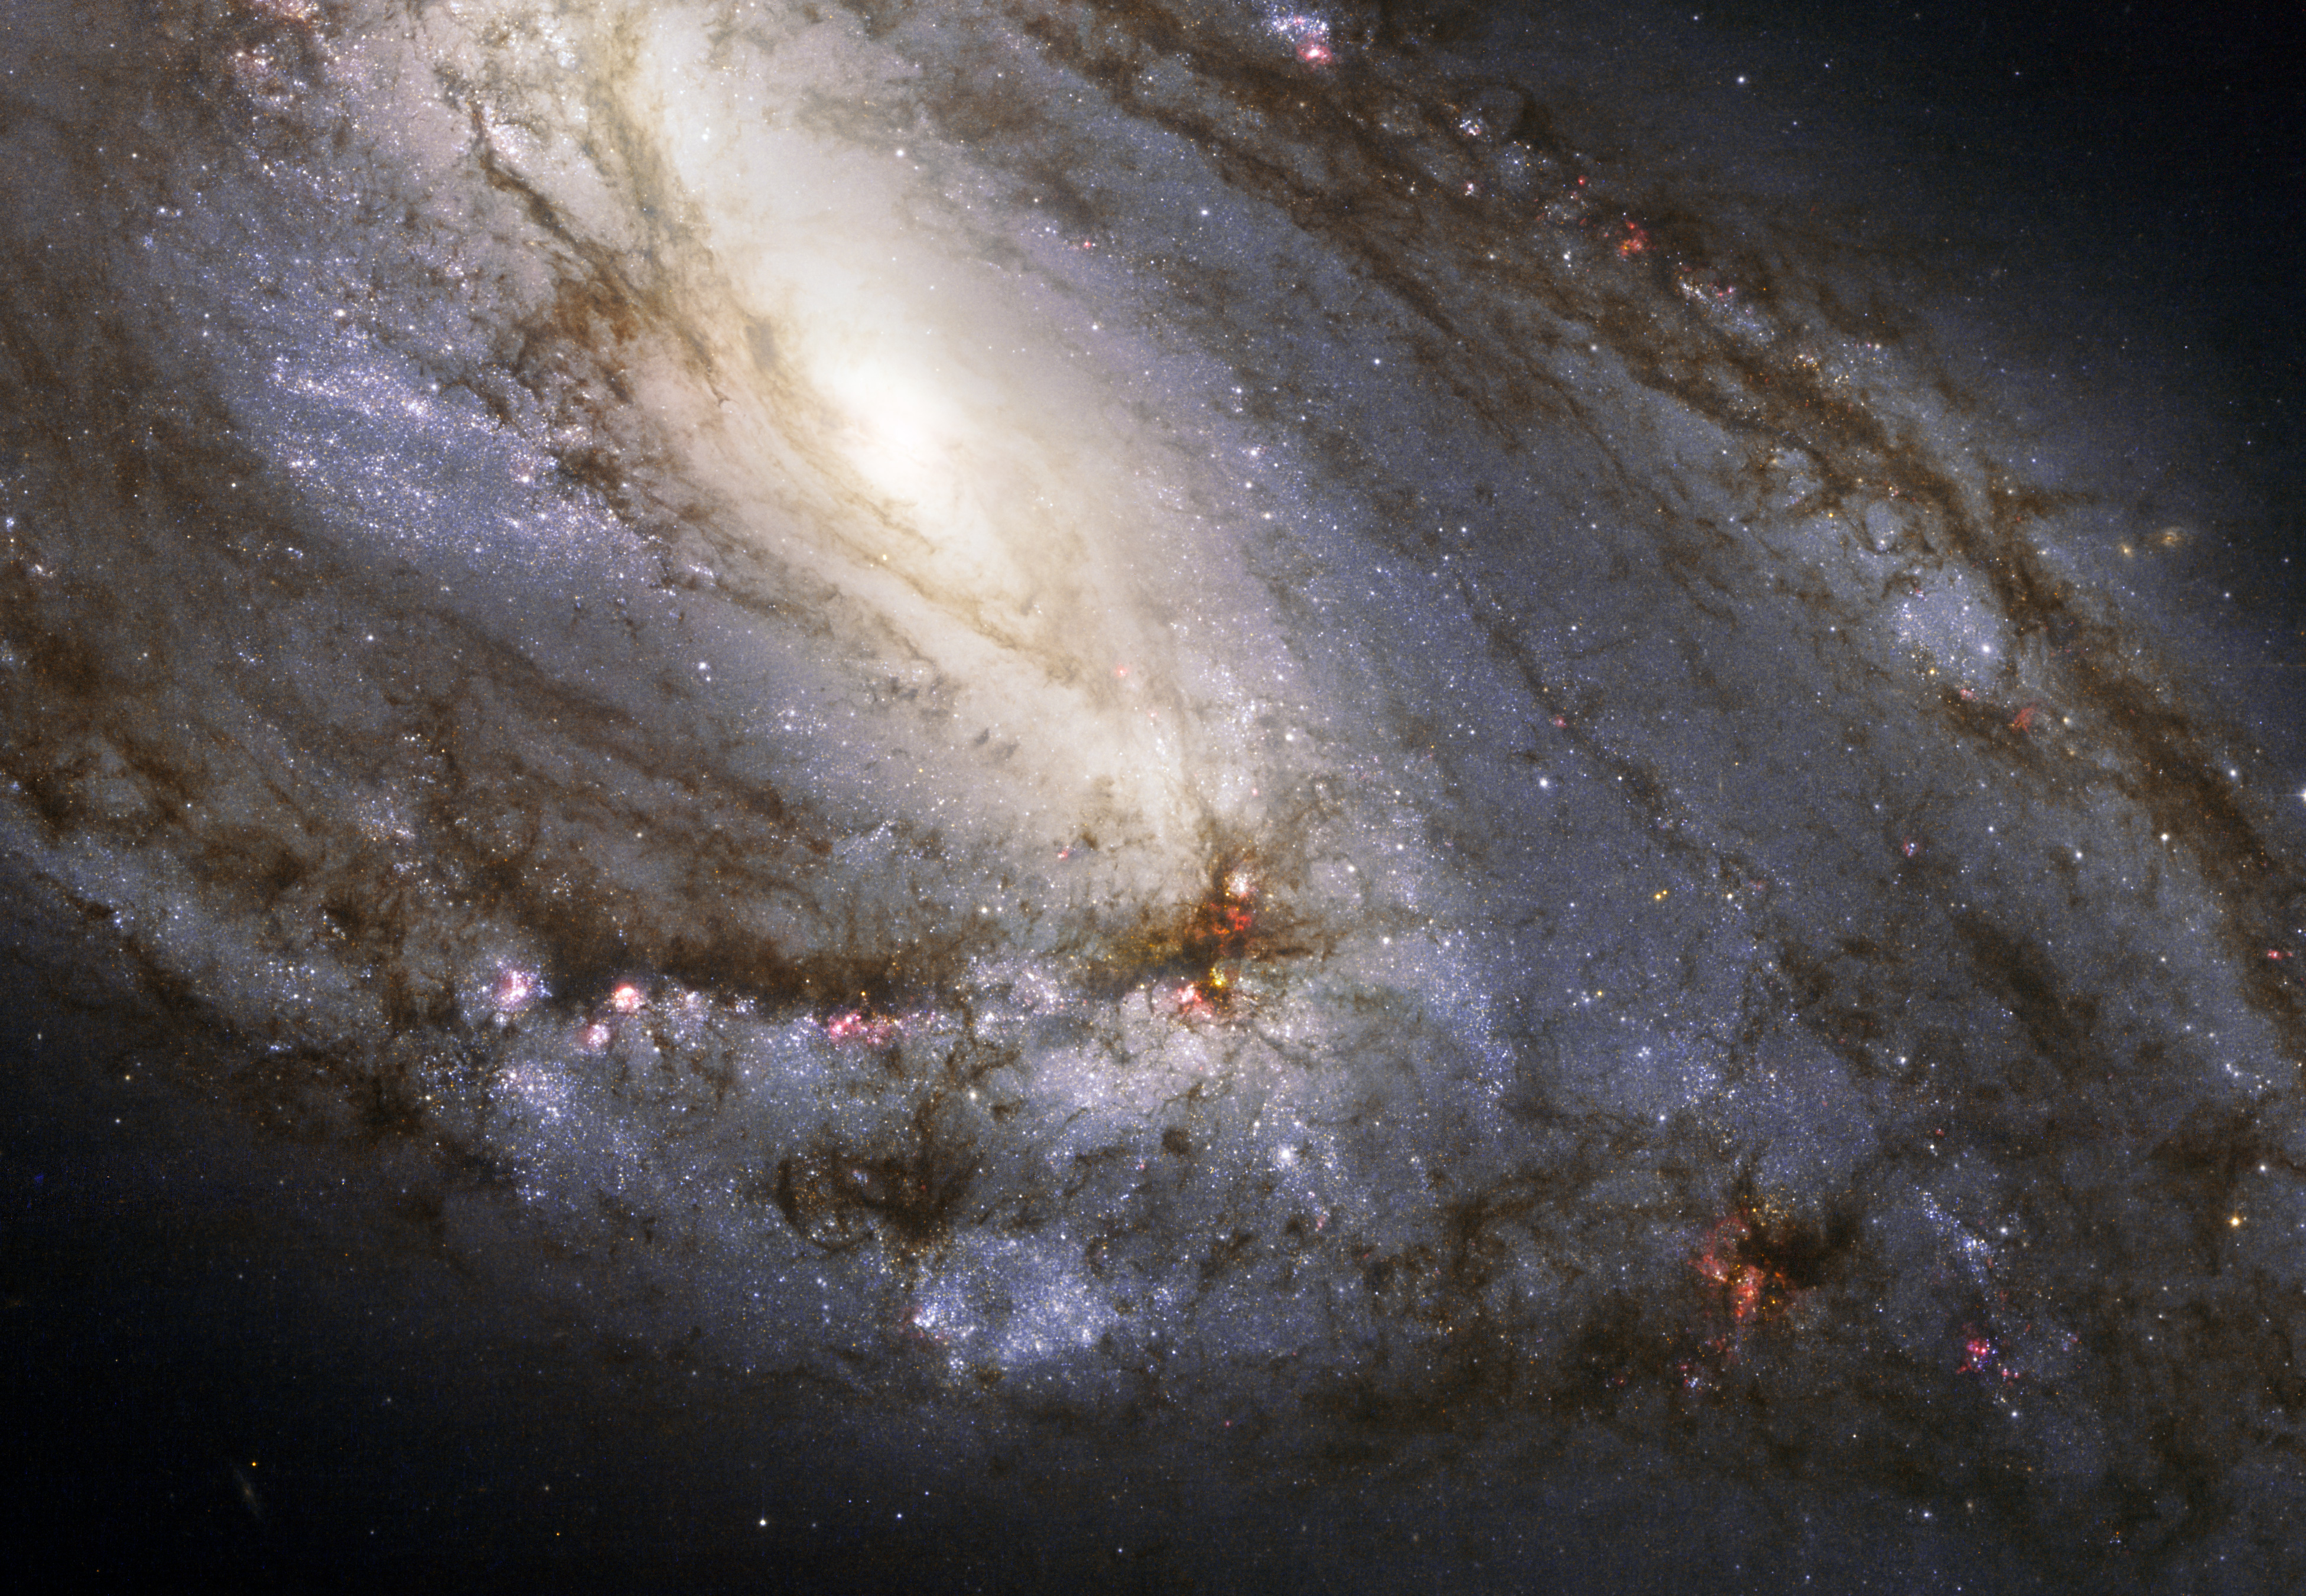 La galaxie spirale M66 vue par Hubble